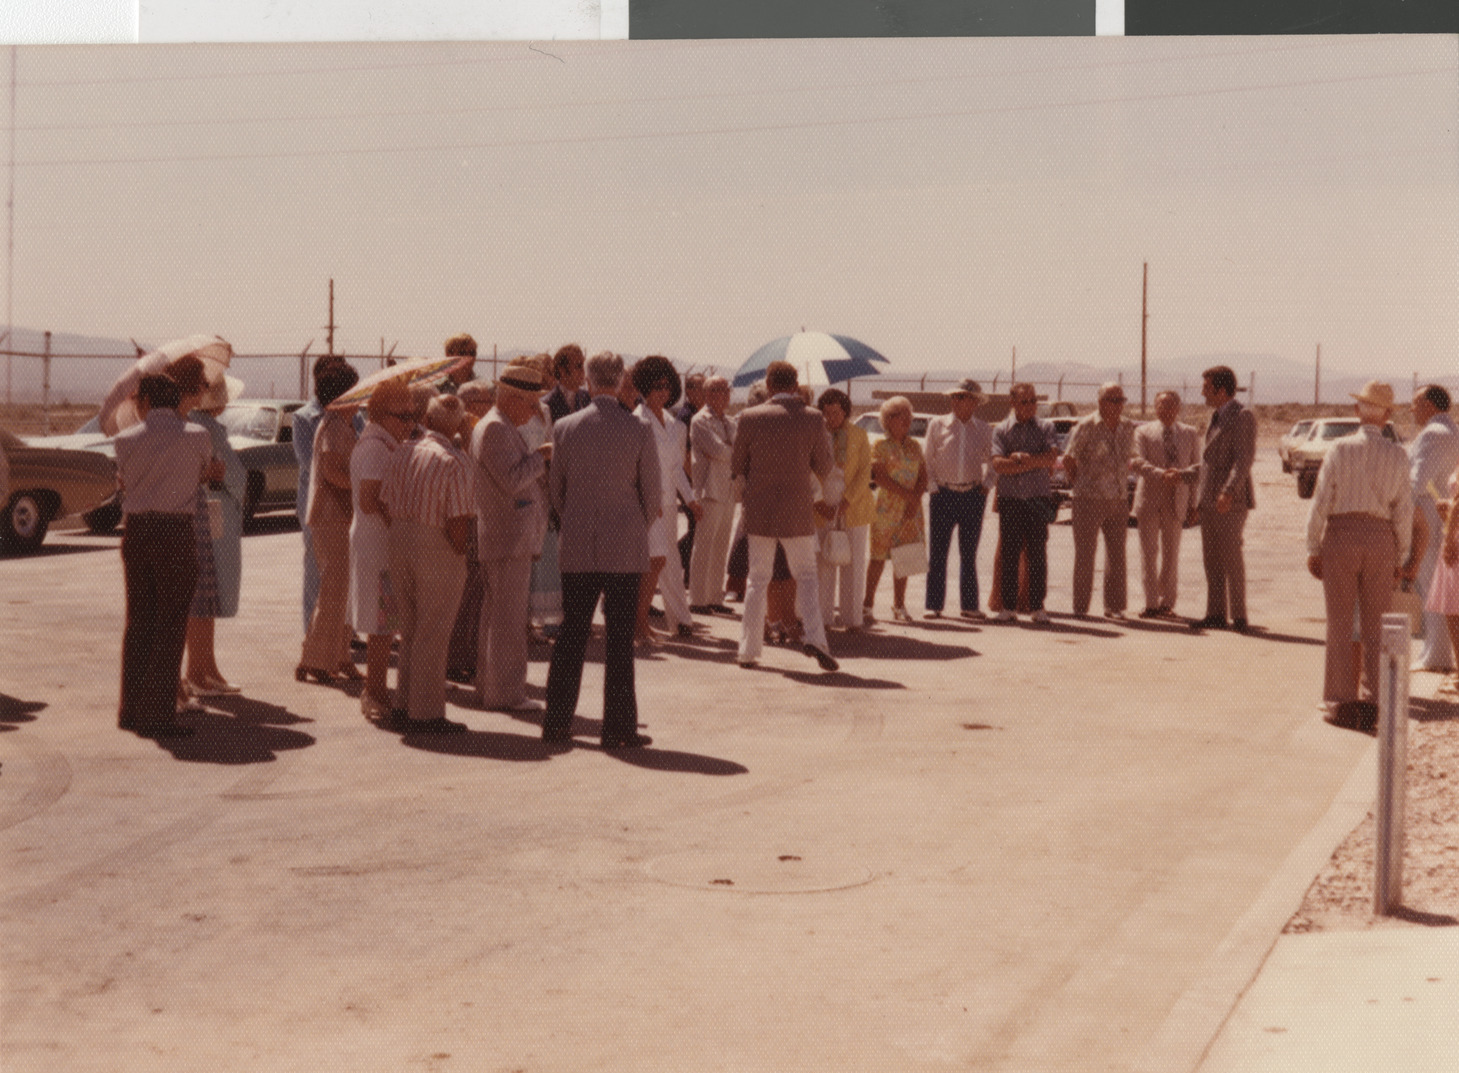 Photograph of an event, circa 1978